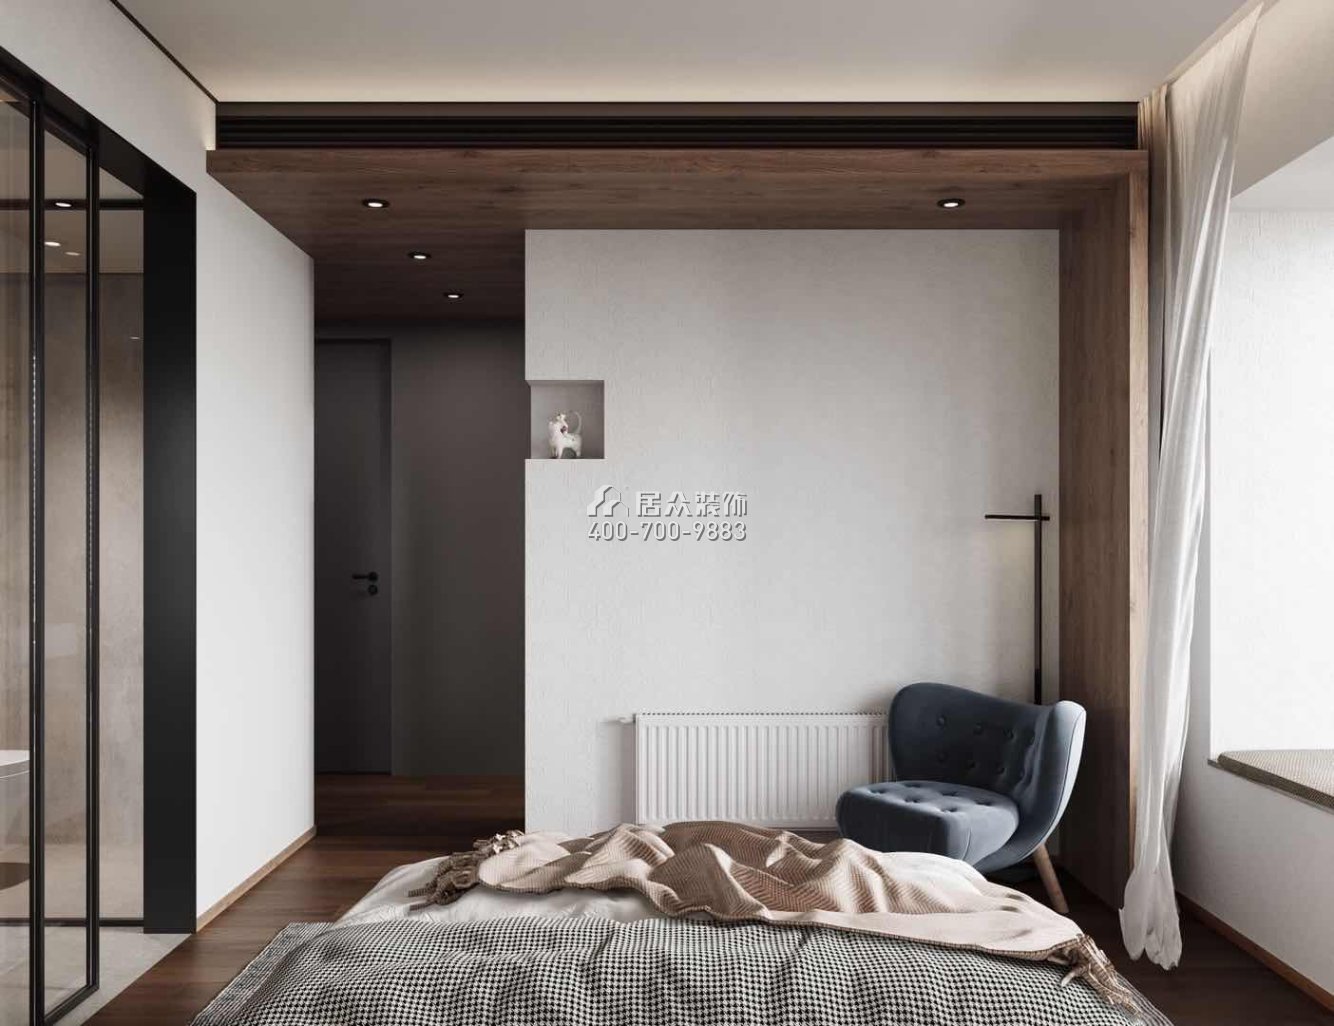 中建江山壹号197平方米现代简约风格平层户型卧室装修效果图